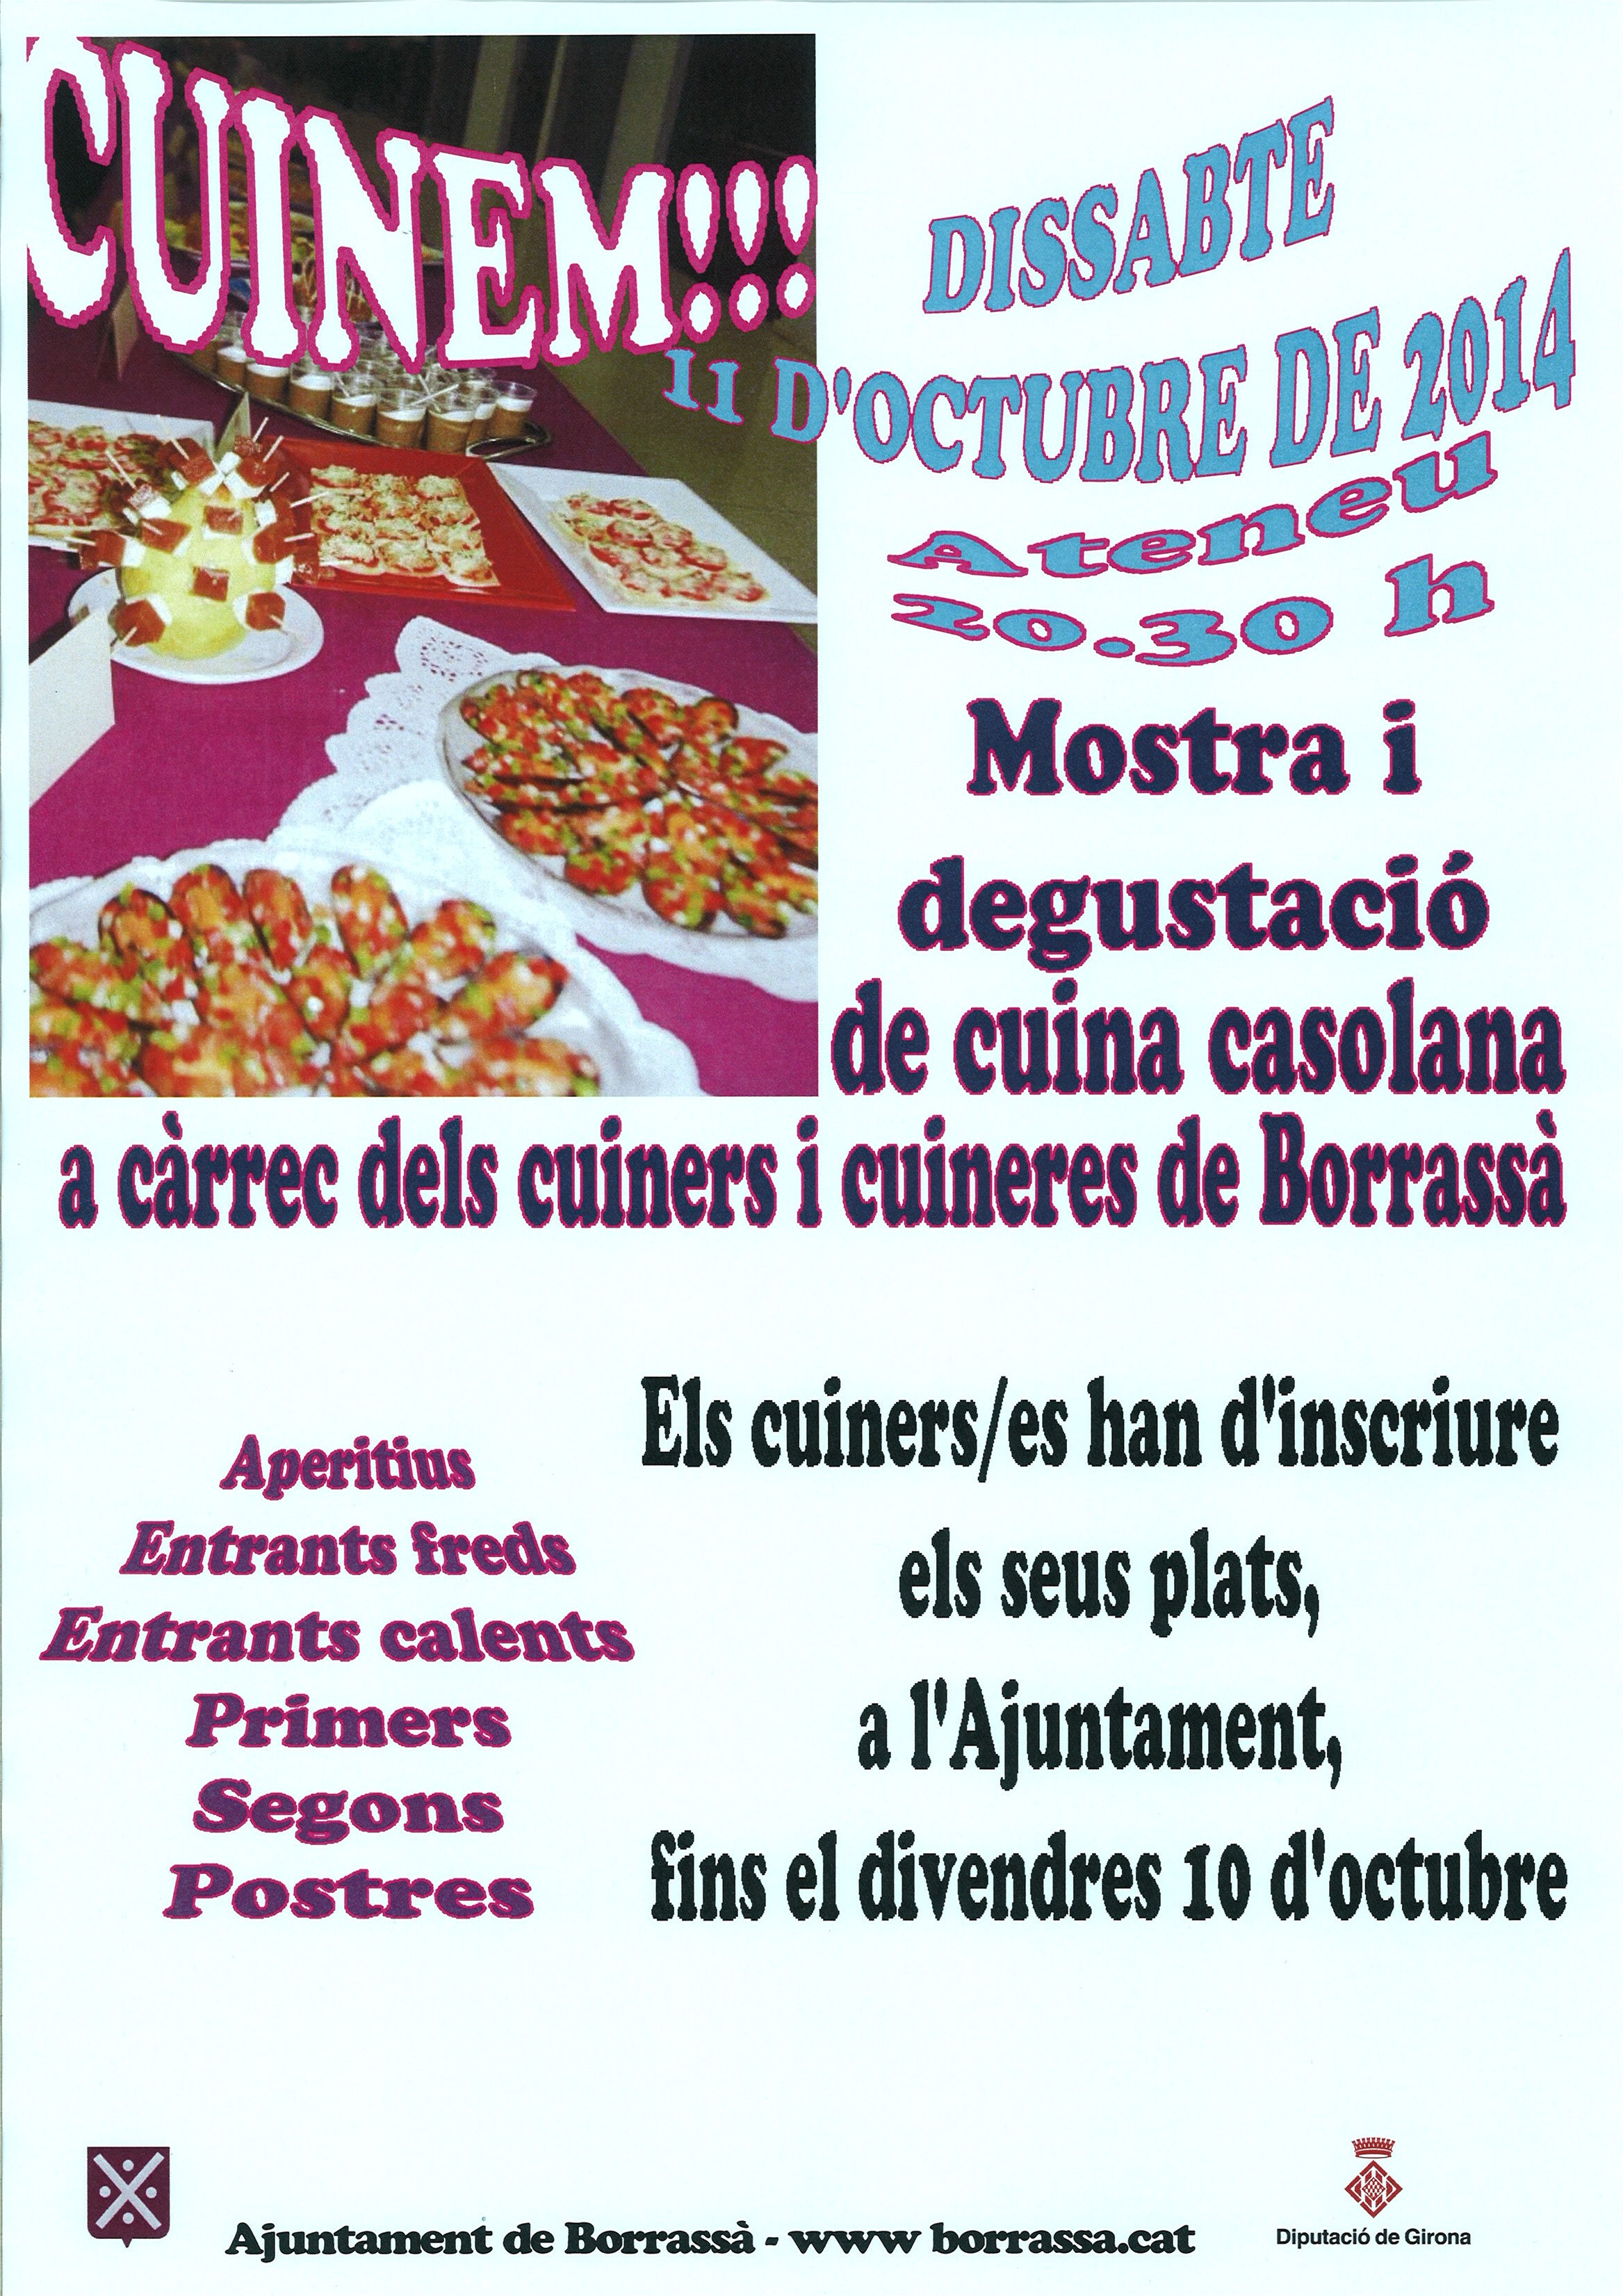 Aquest dissabte, 11 d'octubre, tindrà lloc una nova edició del Cuinem!!!, la mostra i degustació de cuina casolana a càrrec dels cuiners i les cuineres del poble.